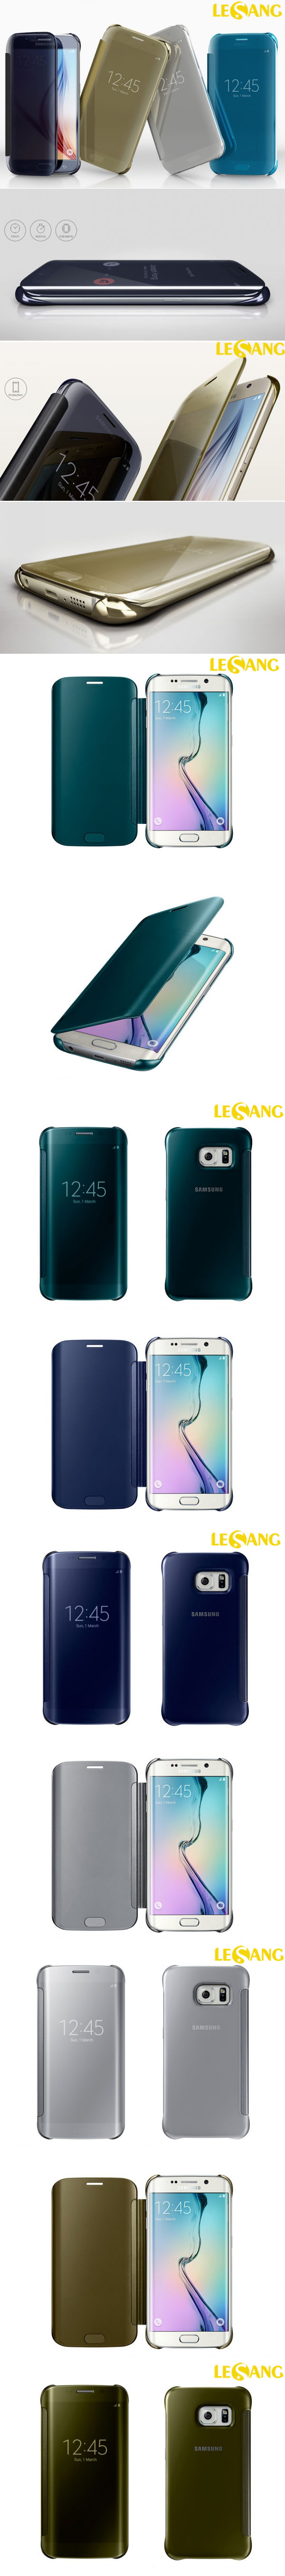 Bao da Galaxy S6 Edge Clear View chính hãng Samsung 325